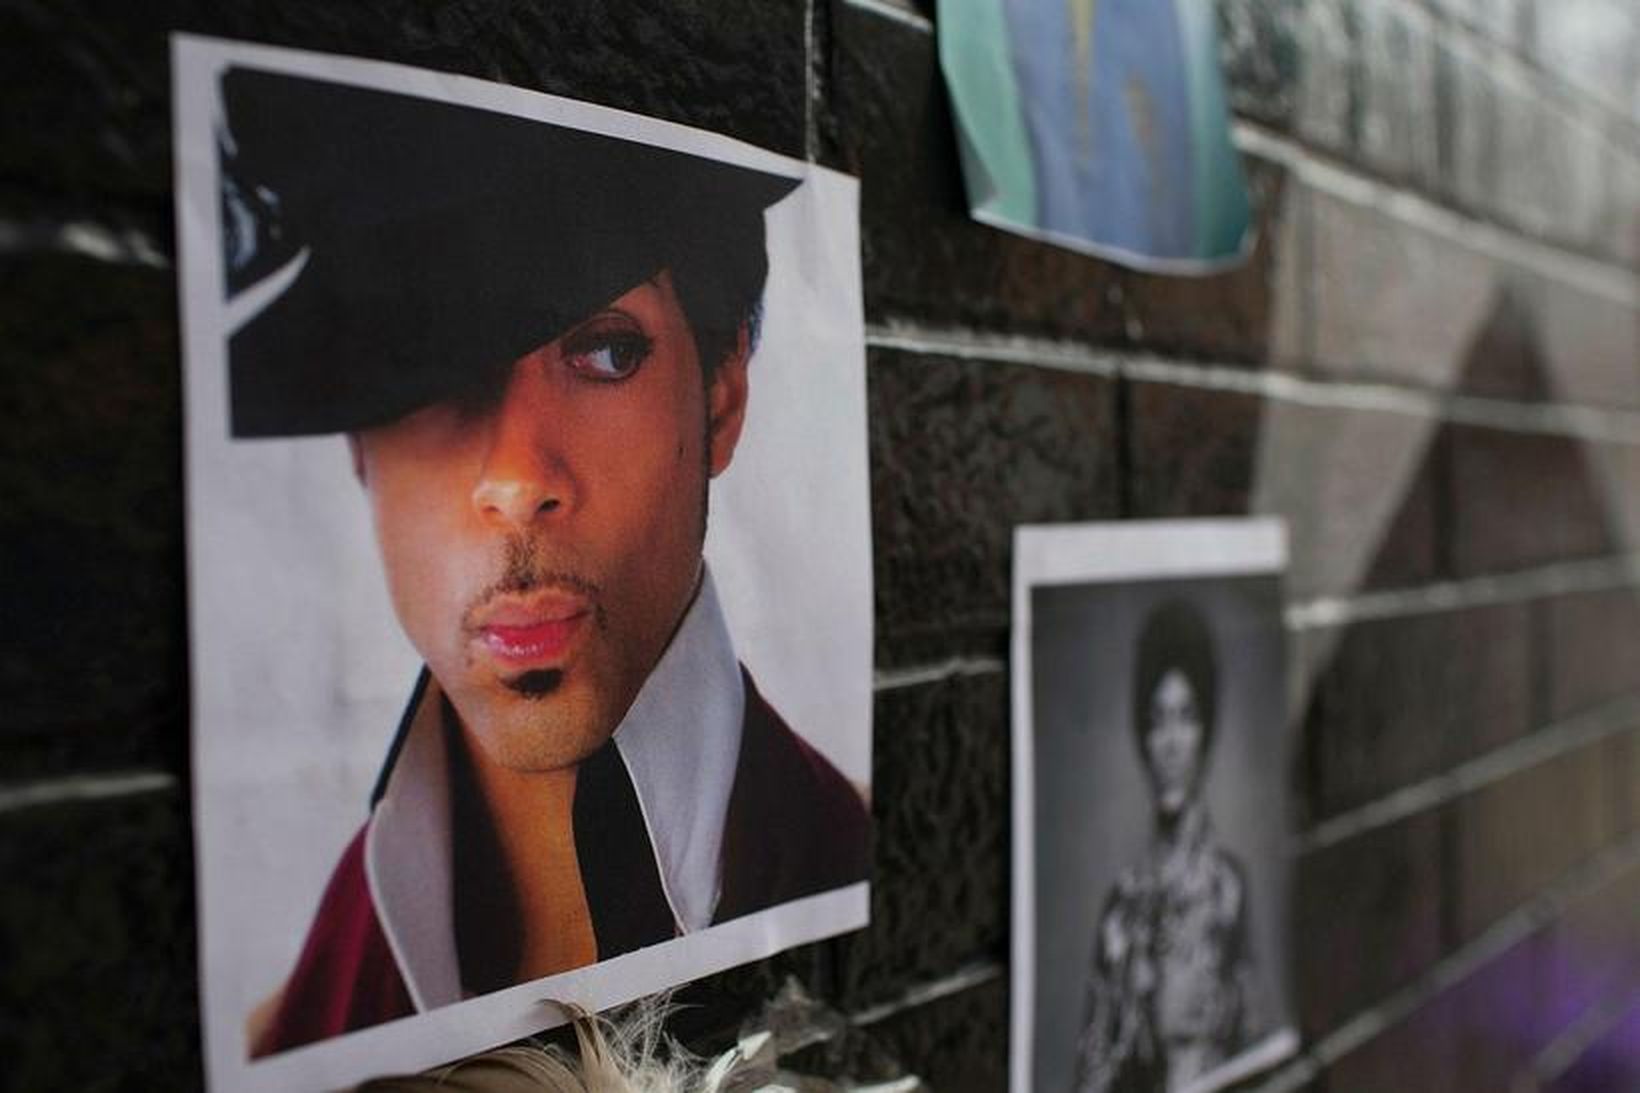 Prince fannst látinn á heimili sínu í apríl. Dánarorsökin var …